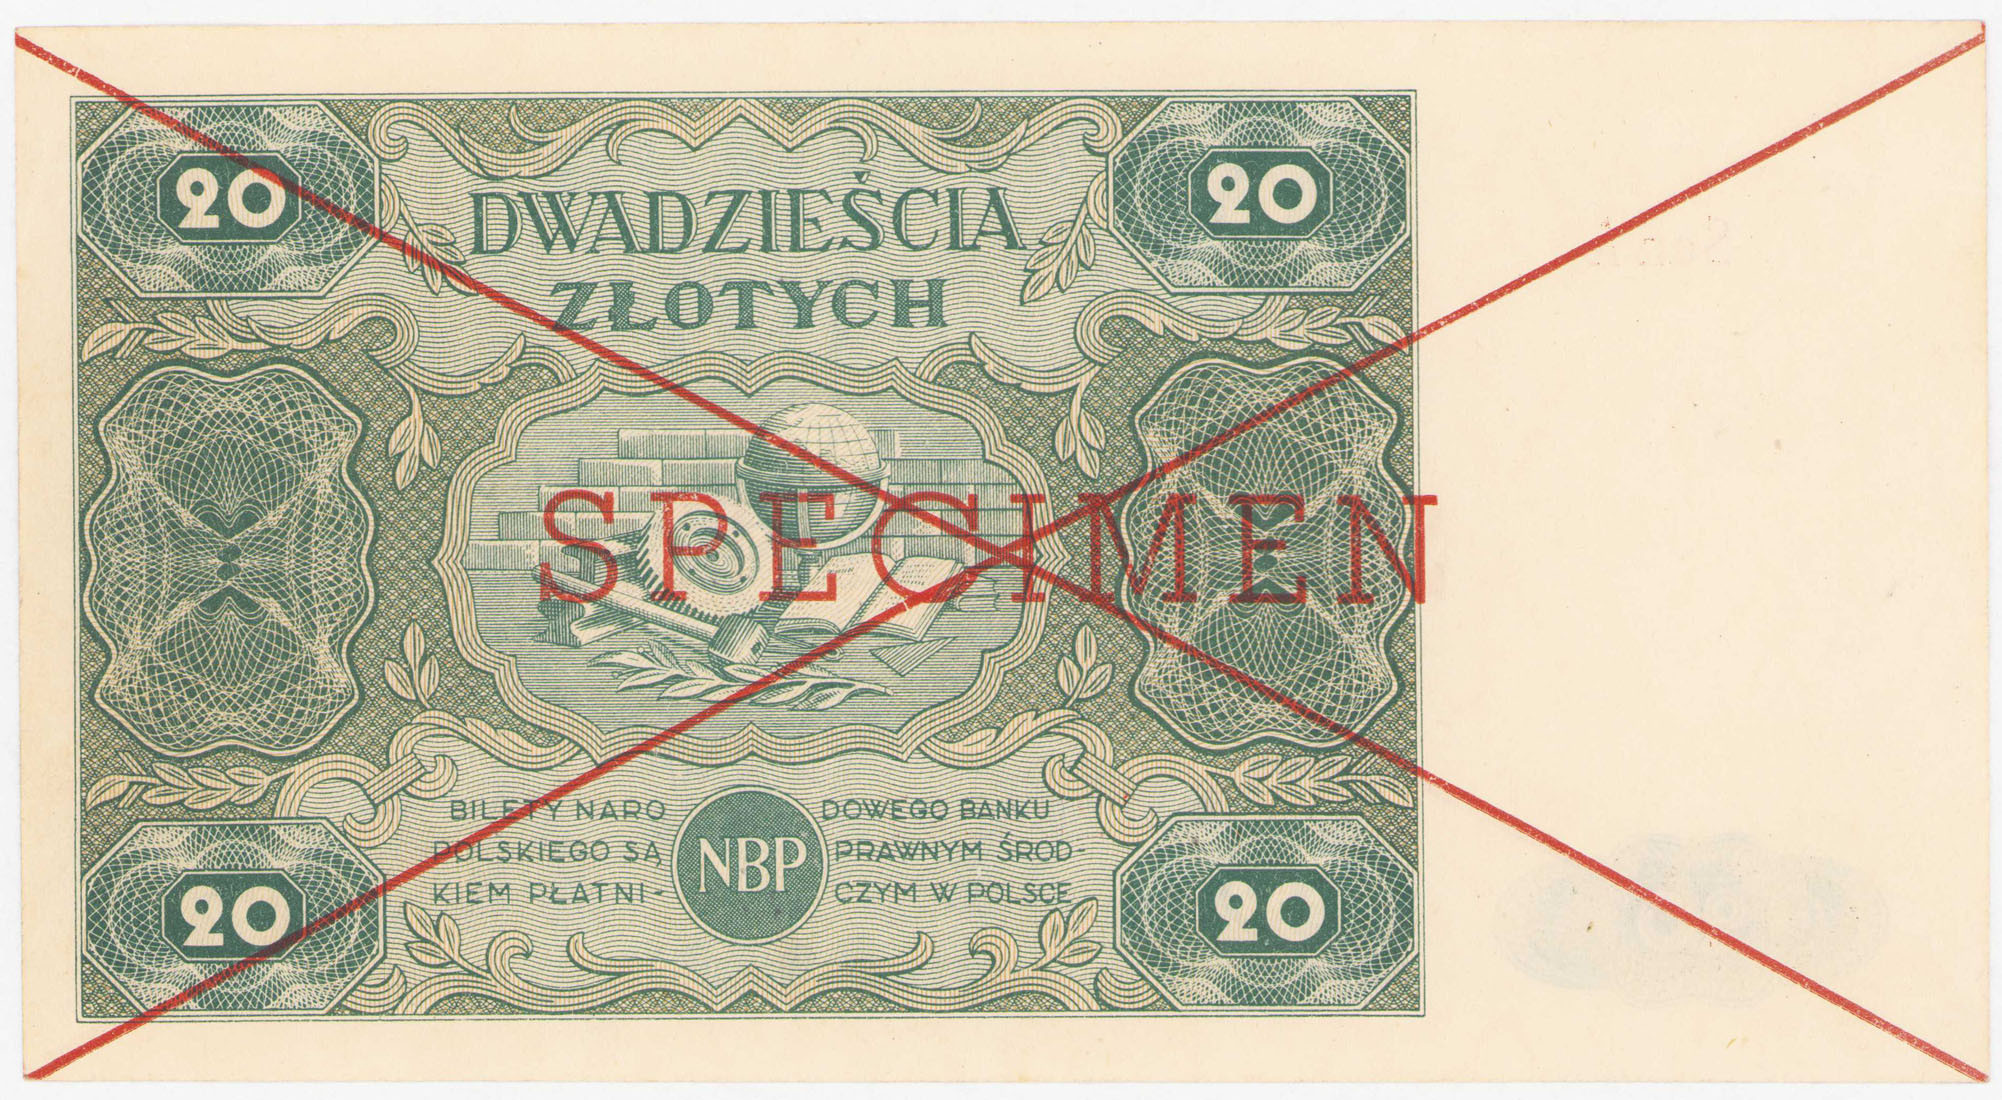  SPECIMEN 20 złotych 1947 seria A - RZADKOŚĆ R5